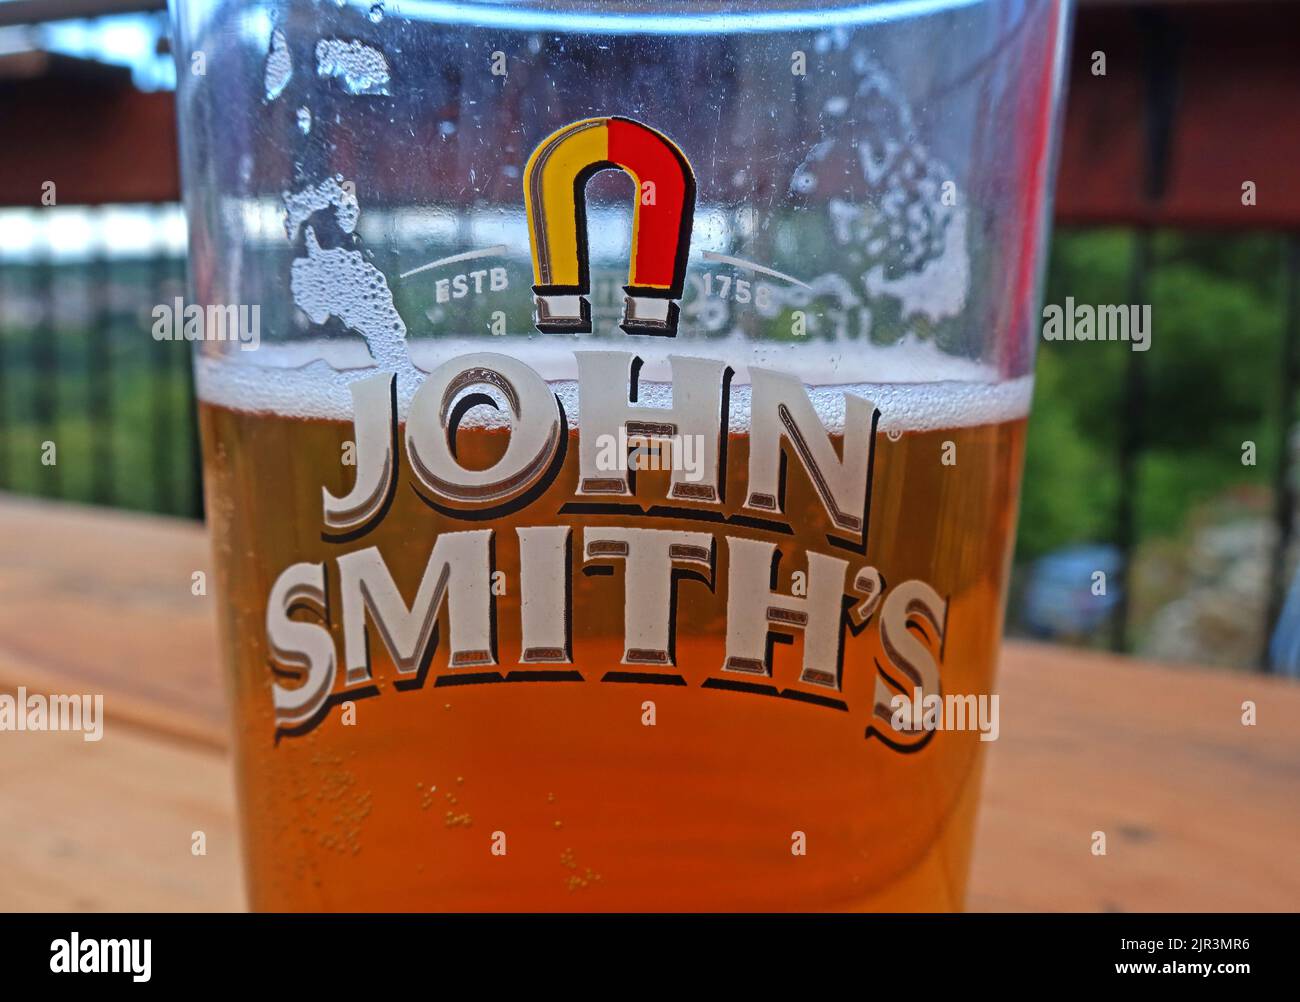 John Smiths, Magnet Ales, Pint Glass, ESTB 1758, halb voll Bier, Llangollen, Nordwales, Vereinigtes Königreich - die meistverkaufte Bitterkeit im Vereinigten Königreich Stockfoto